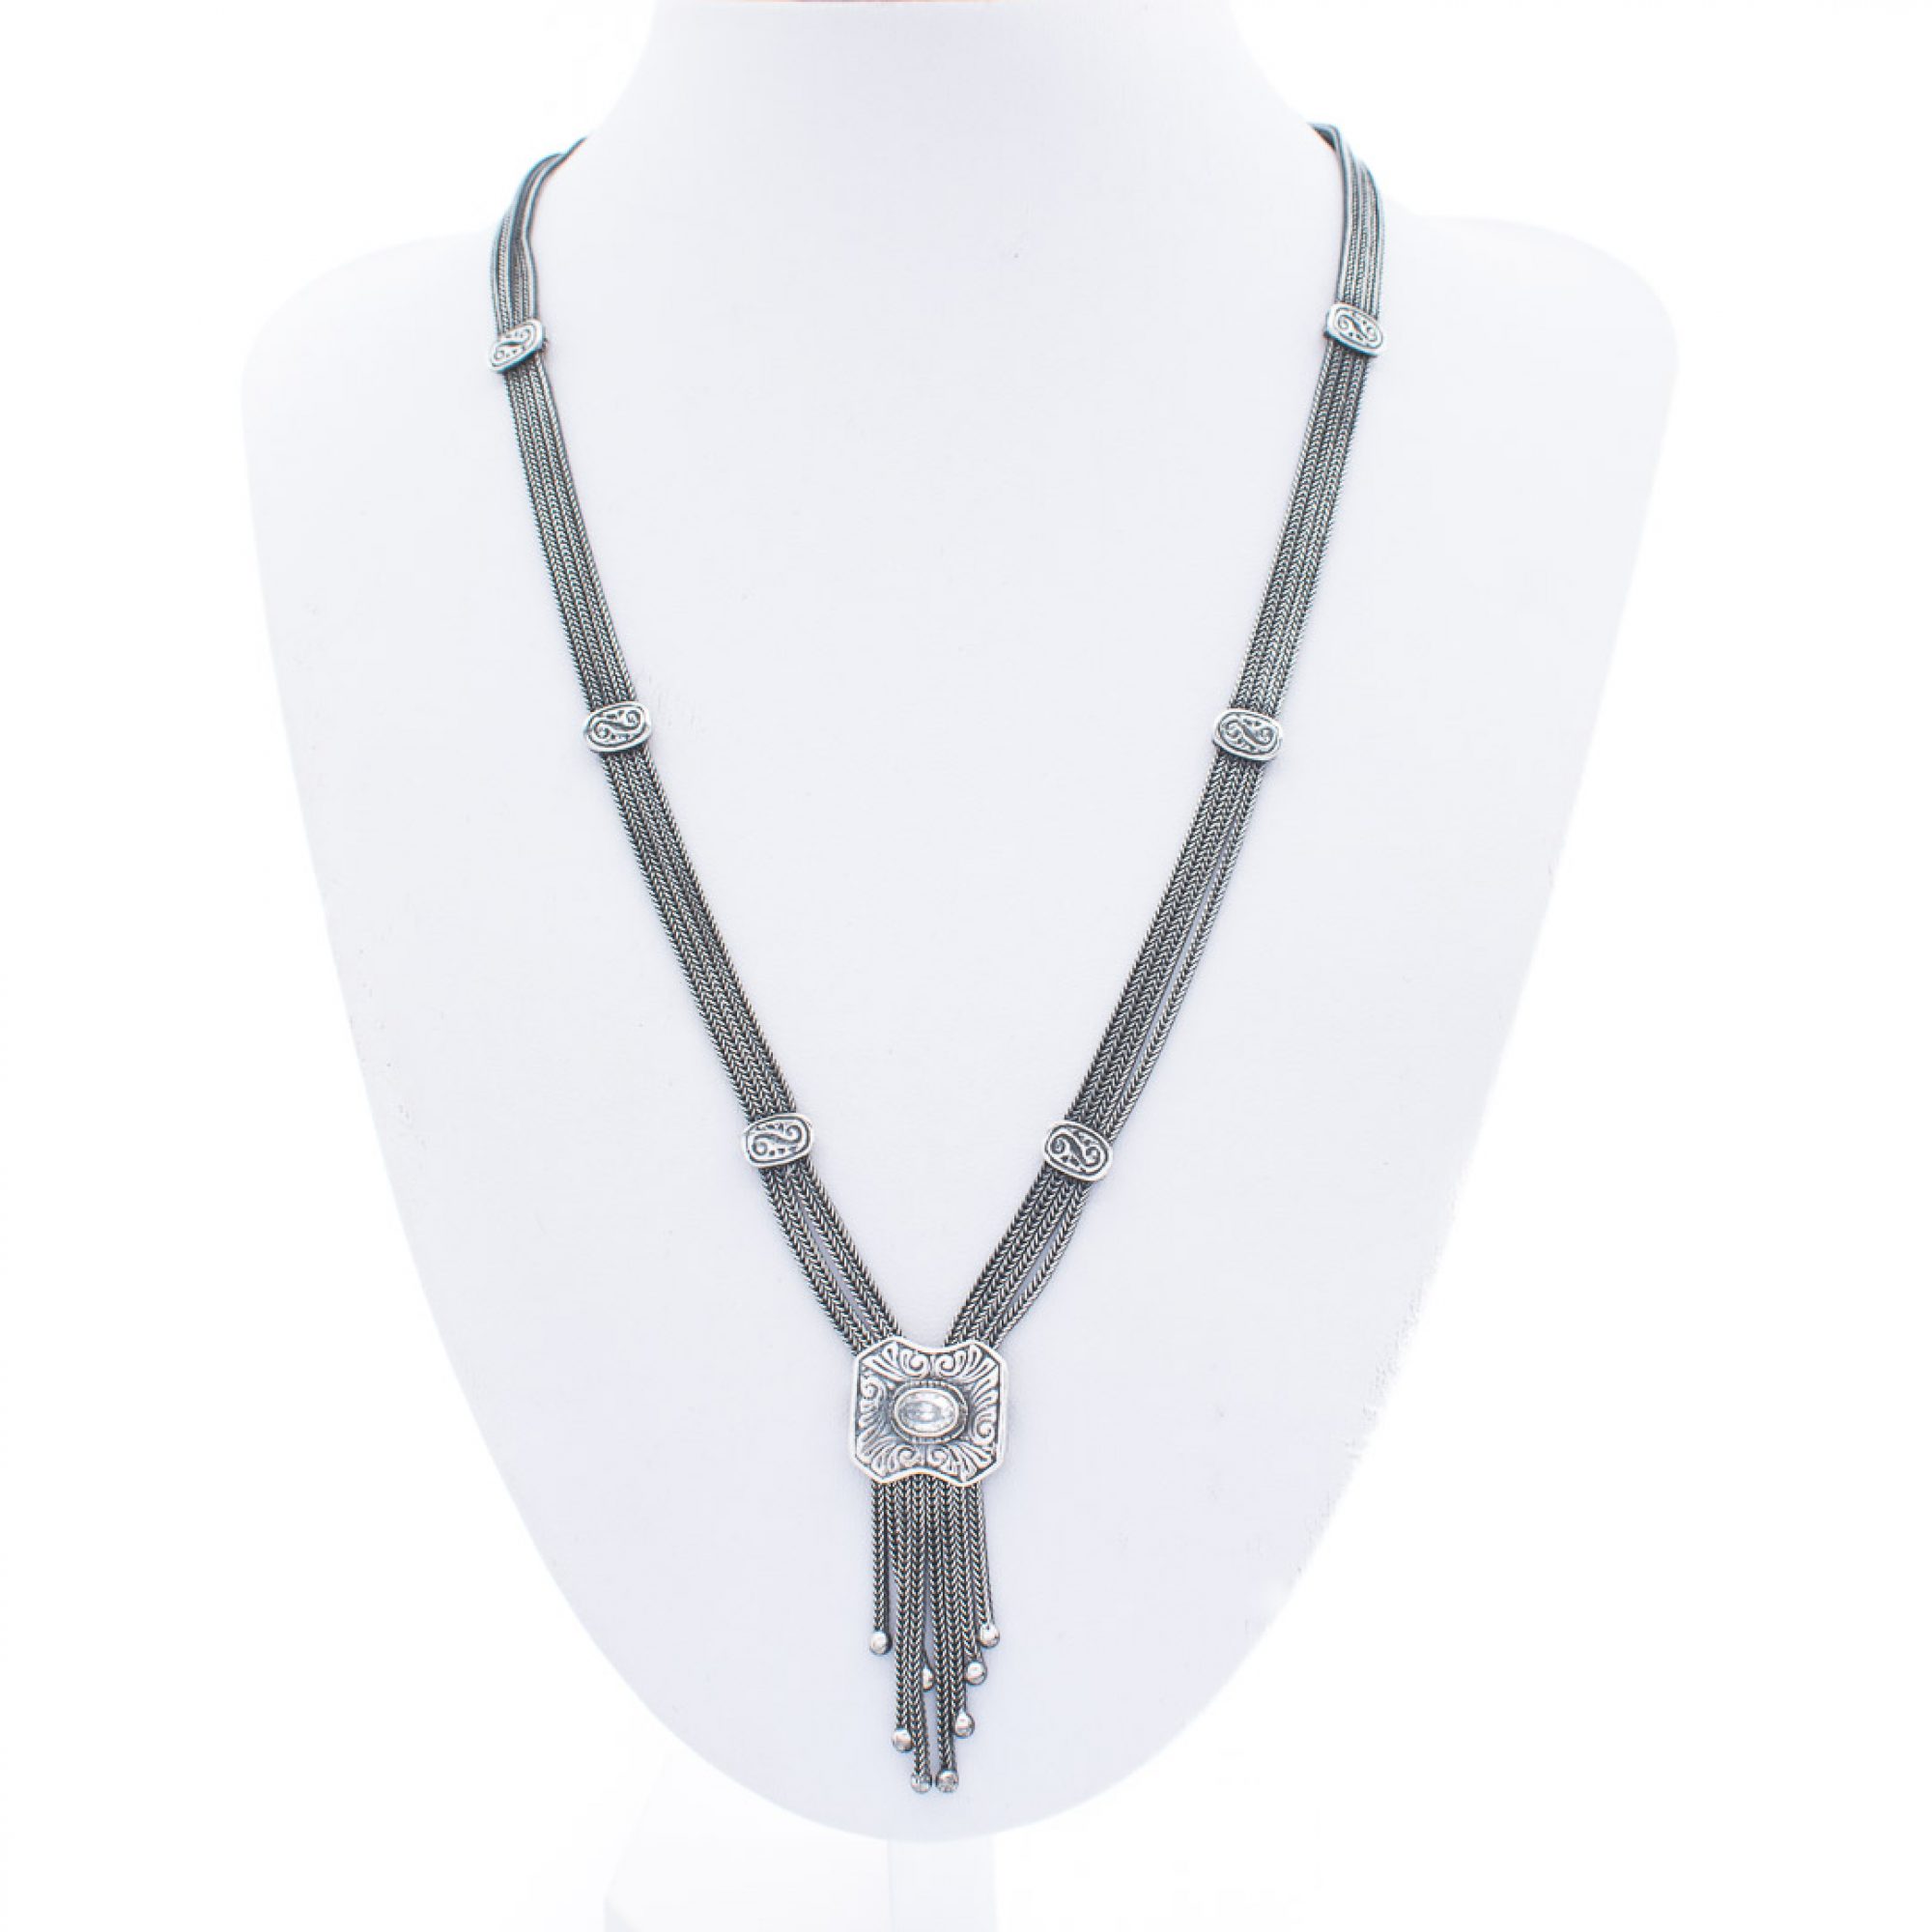 Oxidised necklace with zircon stone